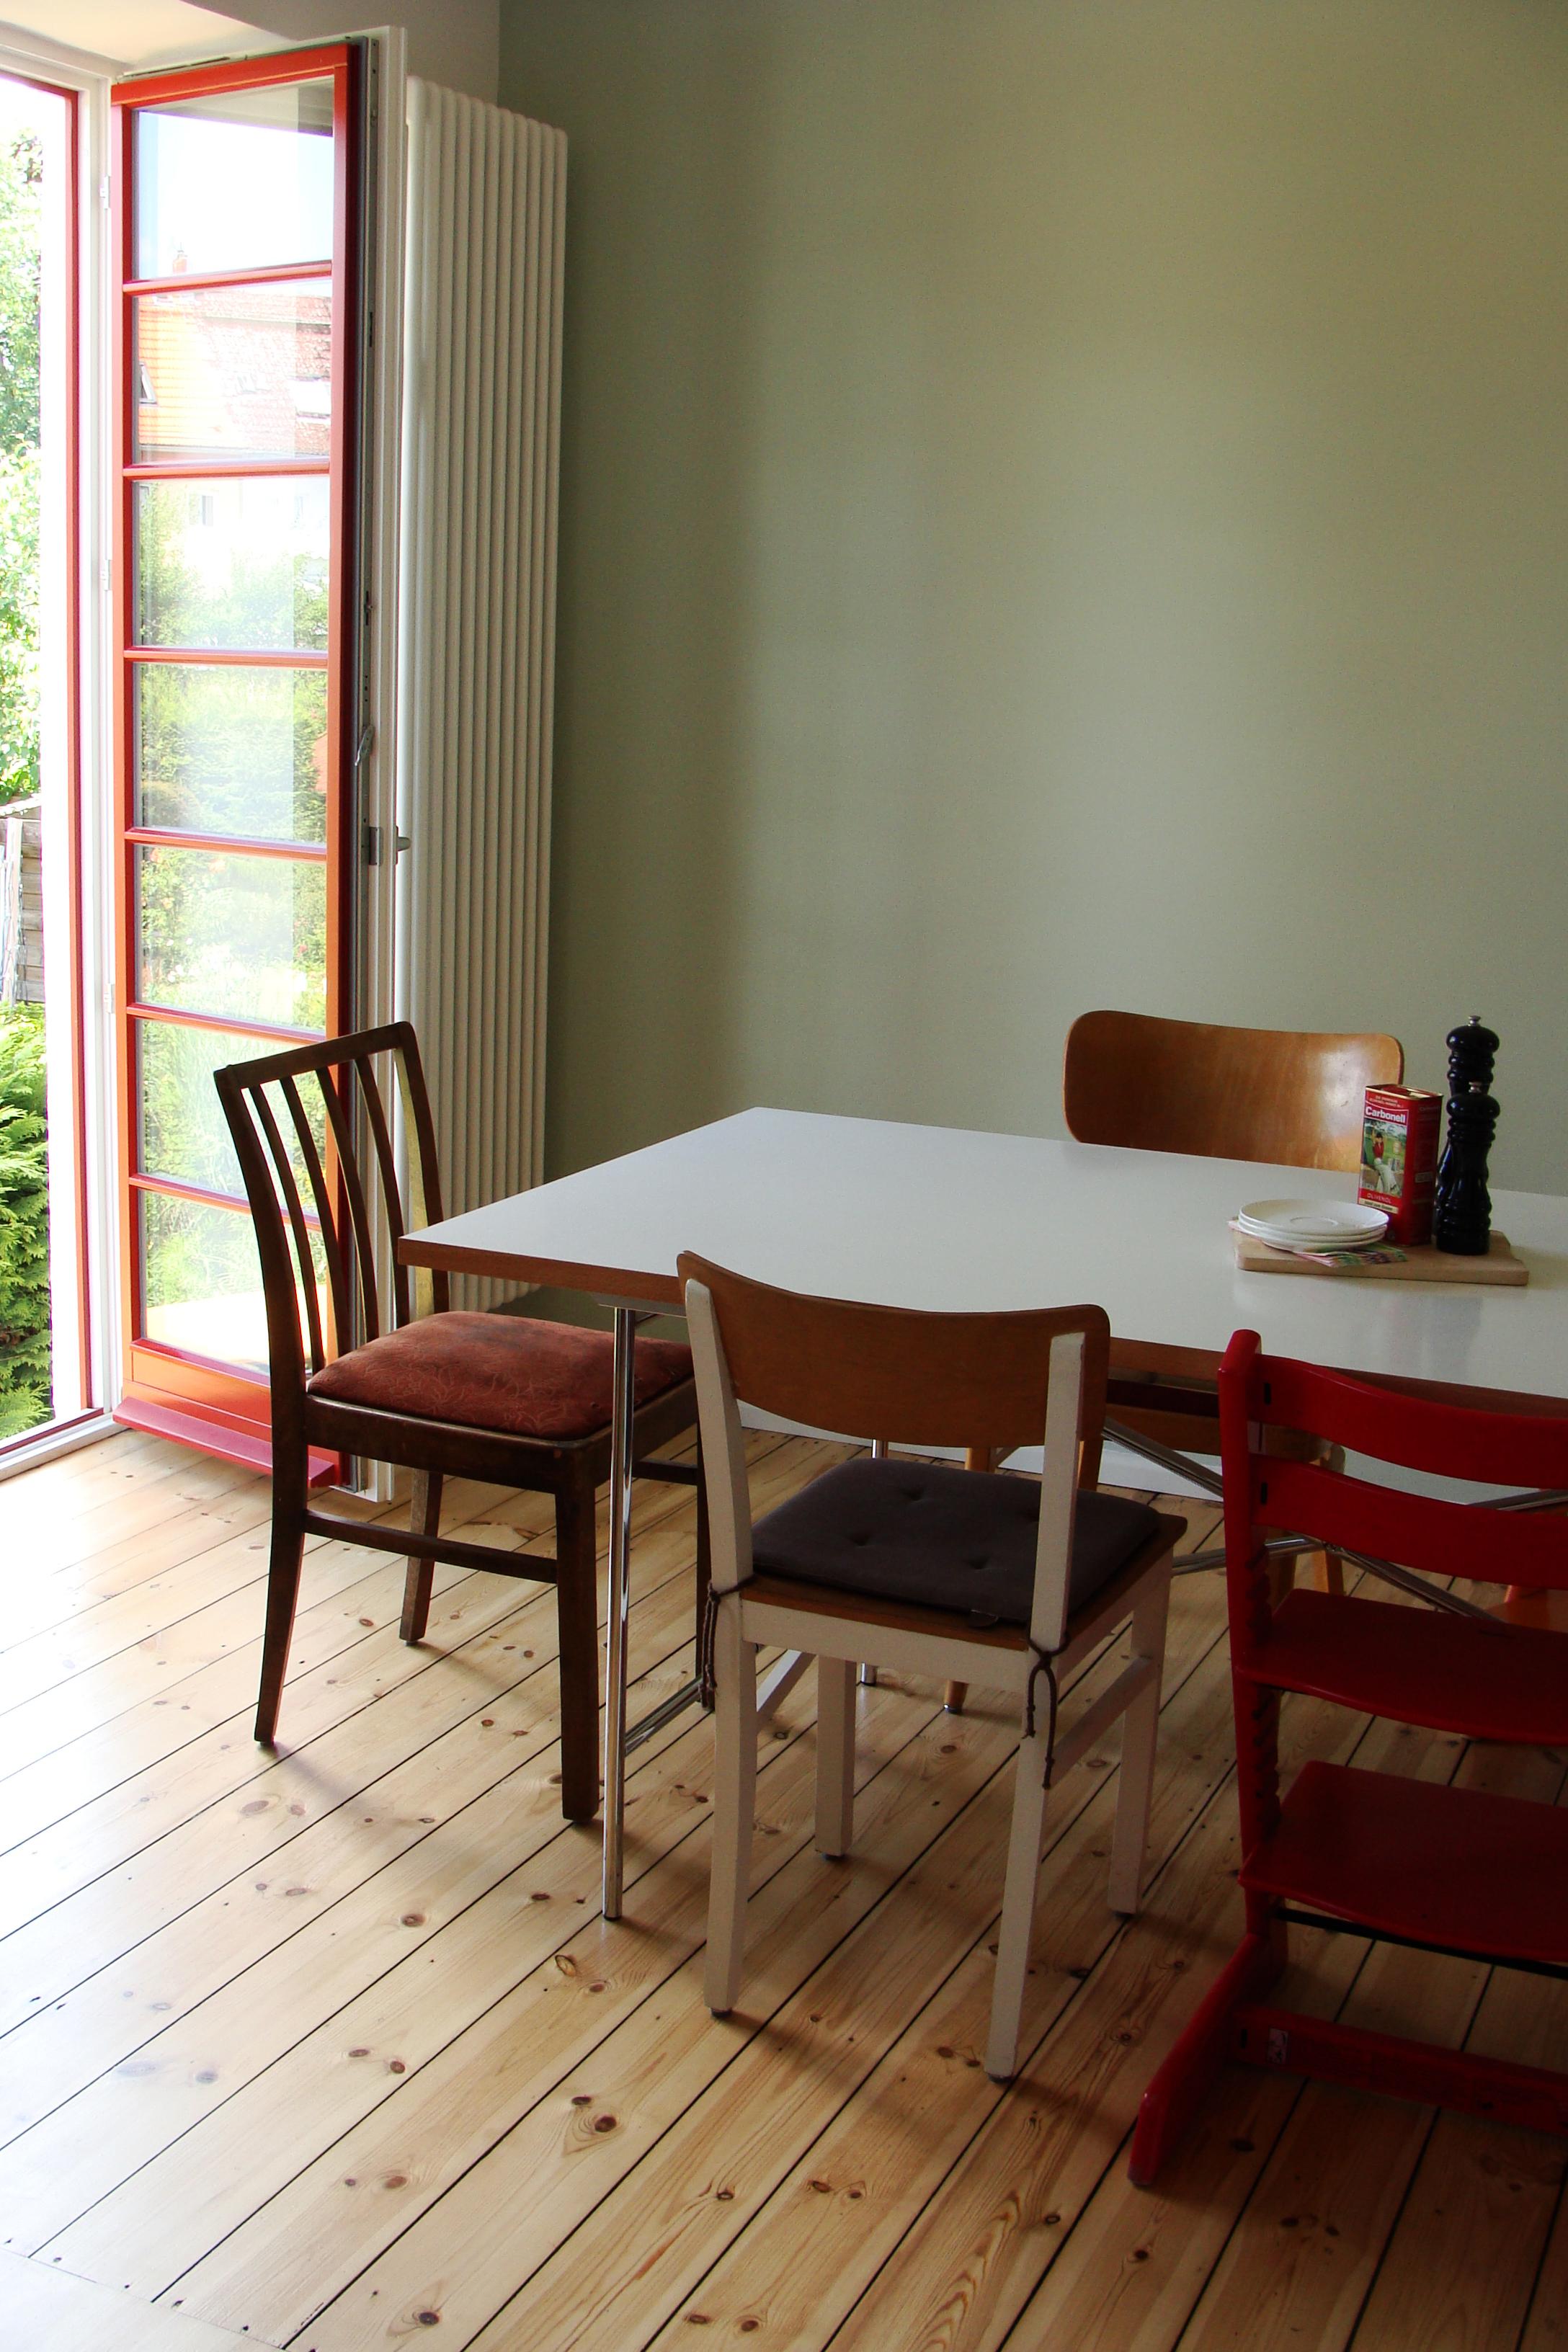 Essplatz mit grüner Wand und roten Fenstern #küche #dielenboden #wandfarbe #vintage #esstisch #esszimmerstuhl #essplatz #grünewandfarbe ©Mareike Kühn